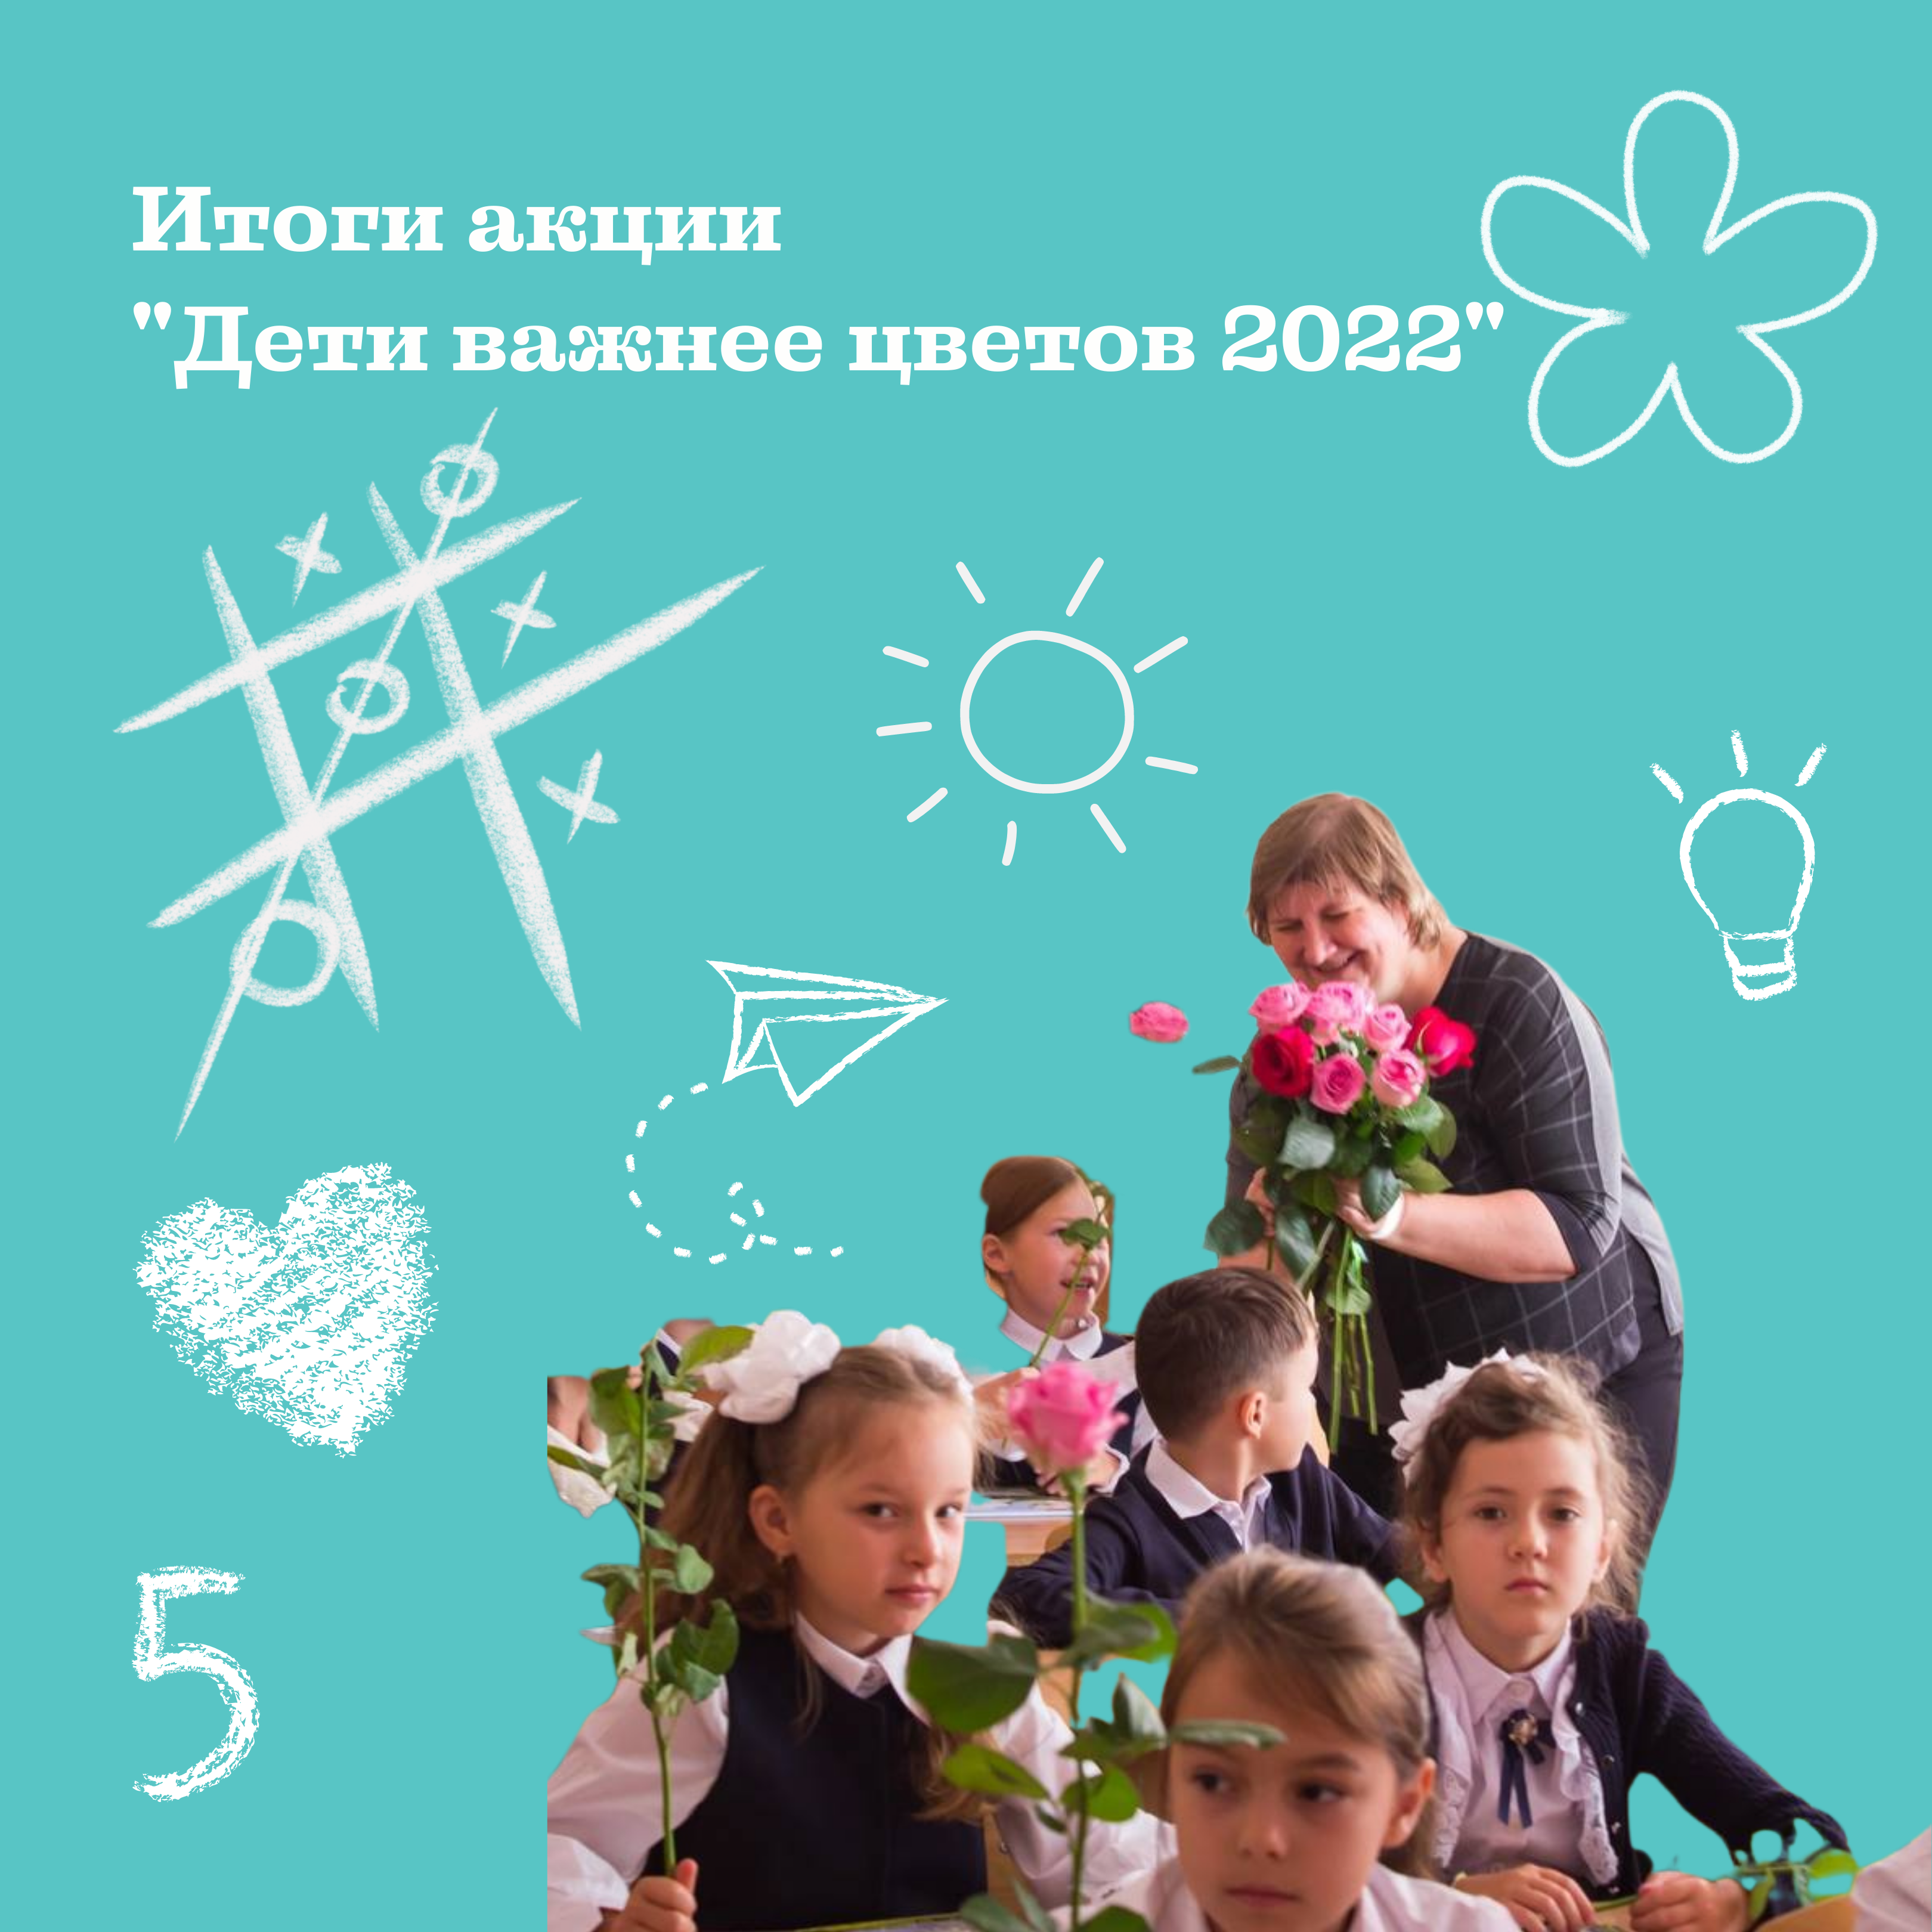 Итоги акции "Дети важнее цветов" 2022